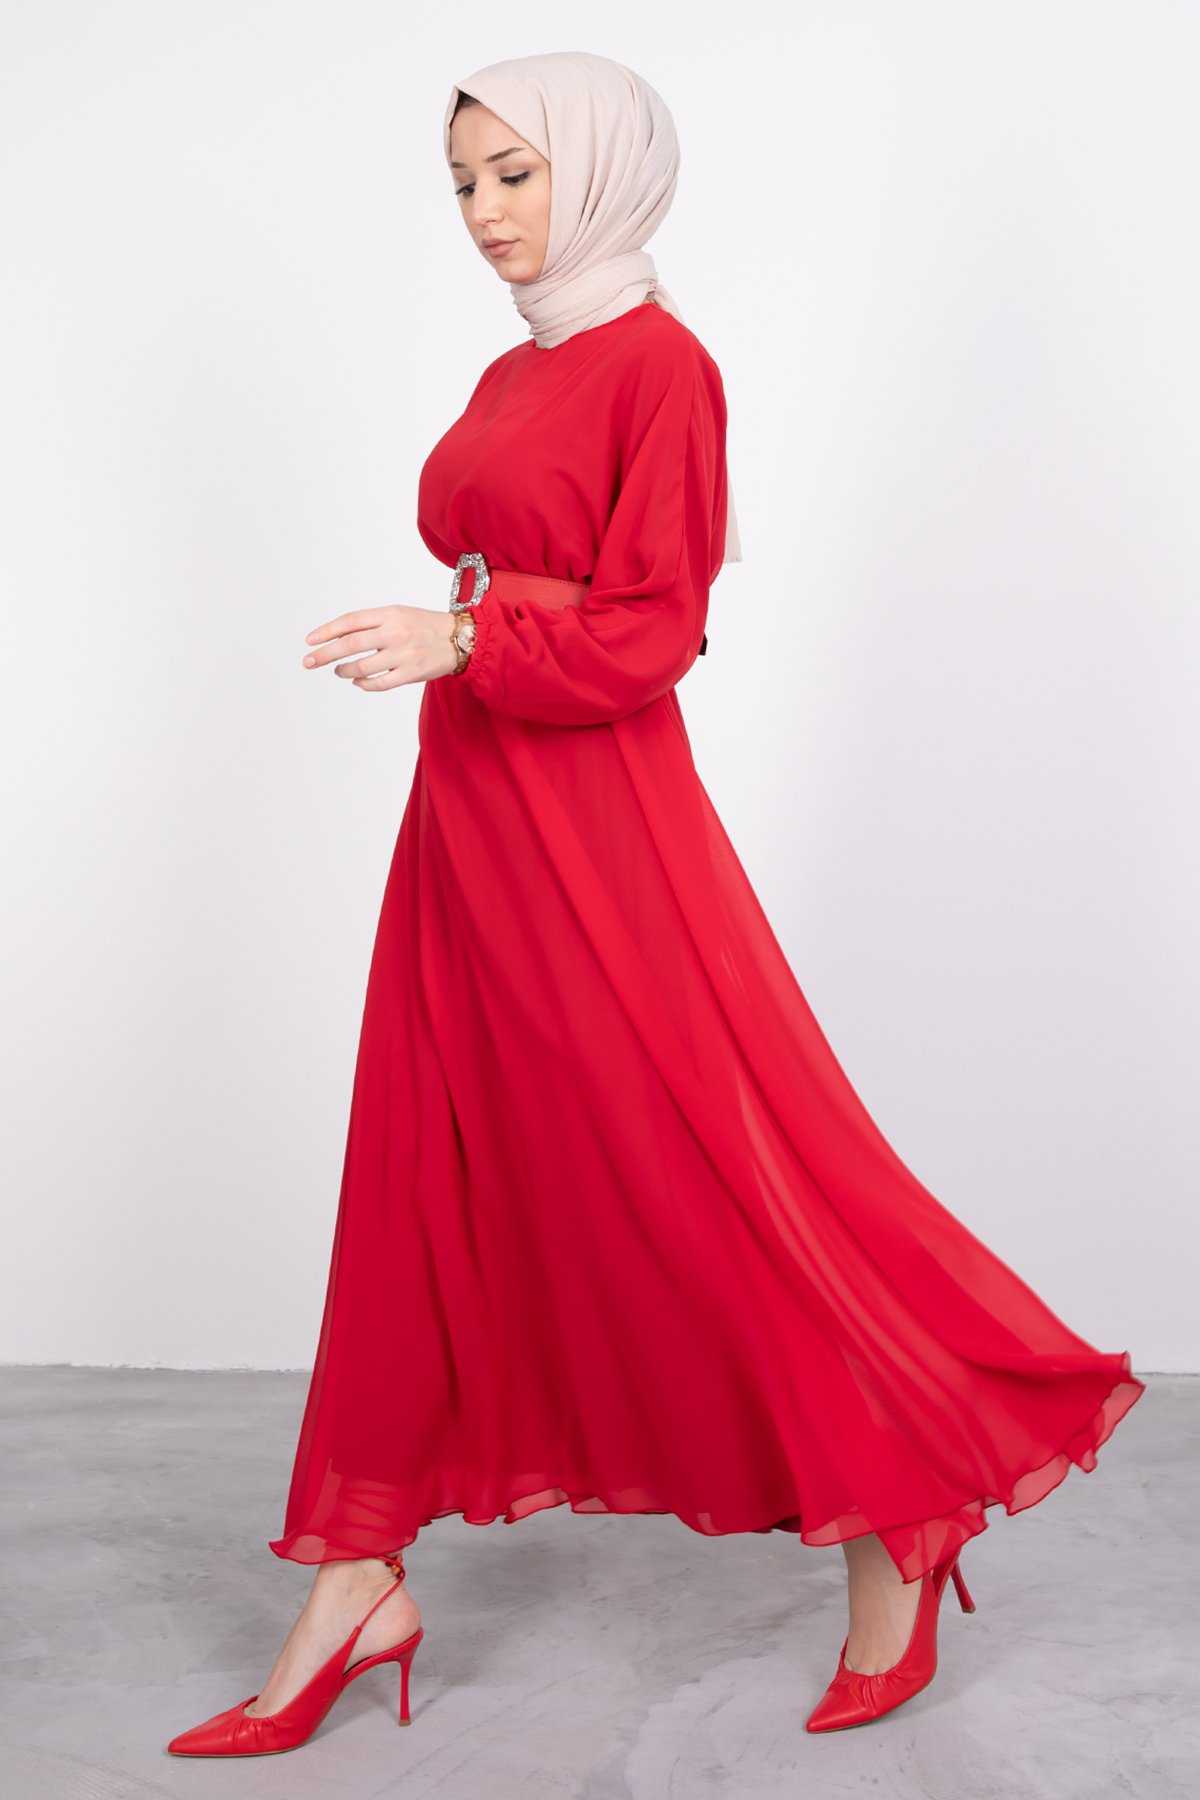 Lamia Giyim Kemerli Kırmızı Elbise Modelleri